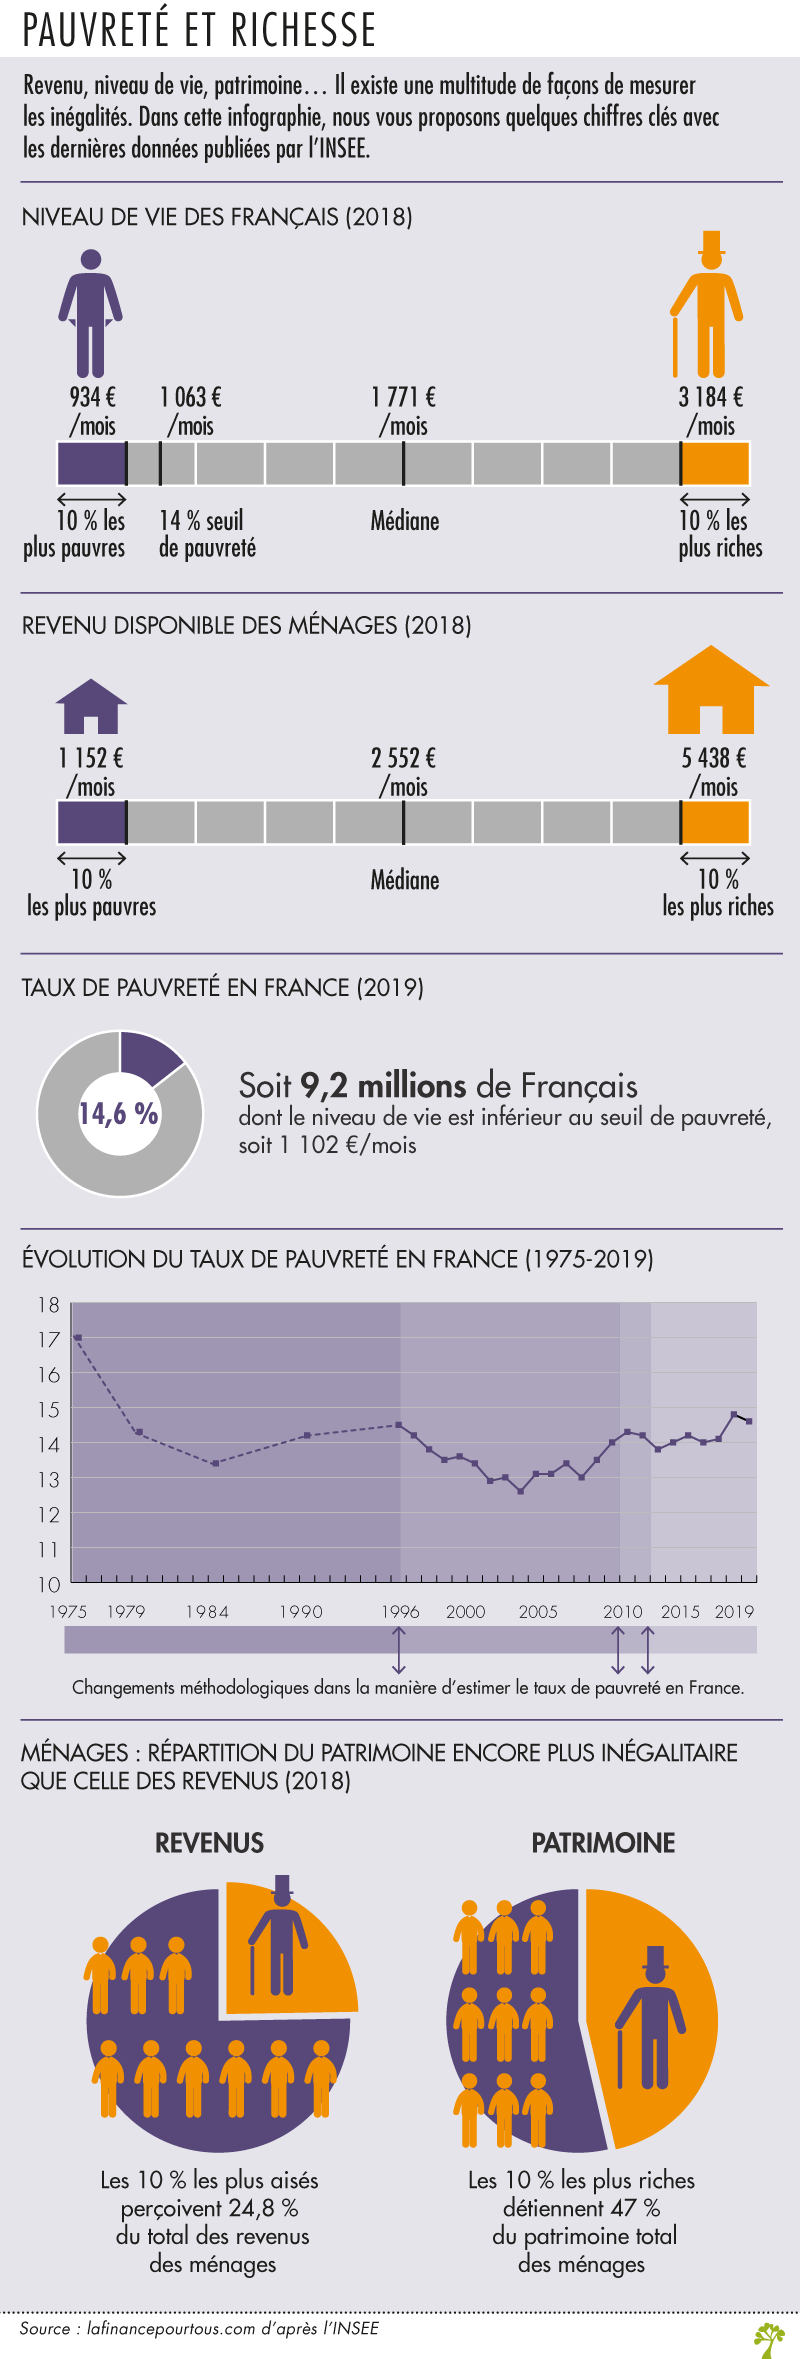 Pauvreté et richesse en France